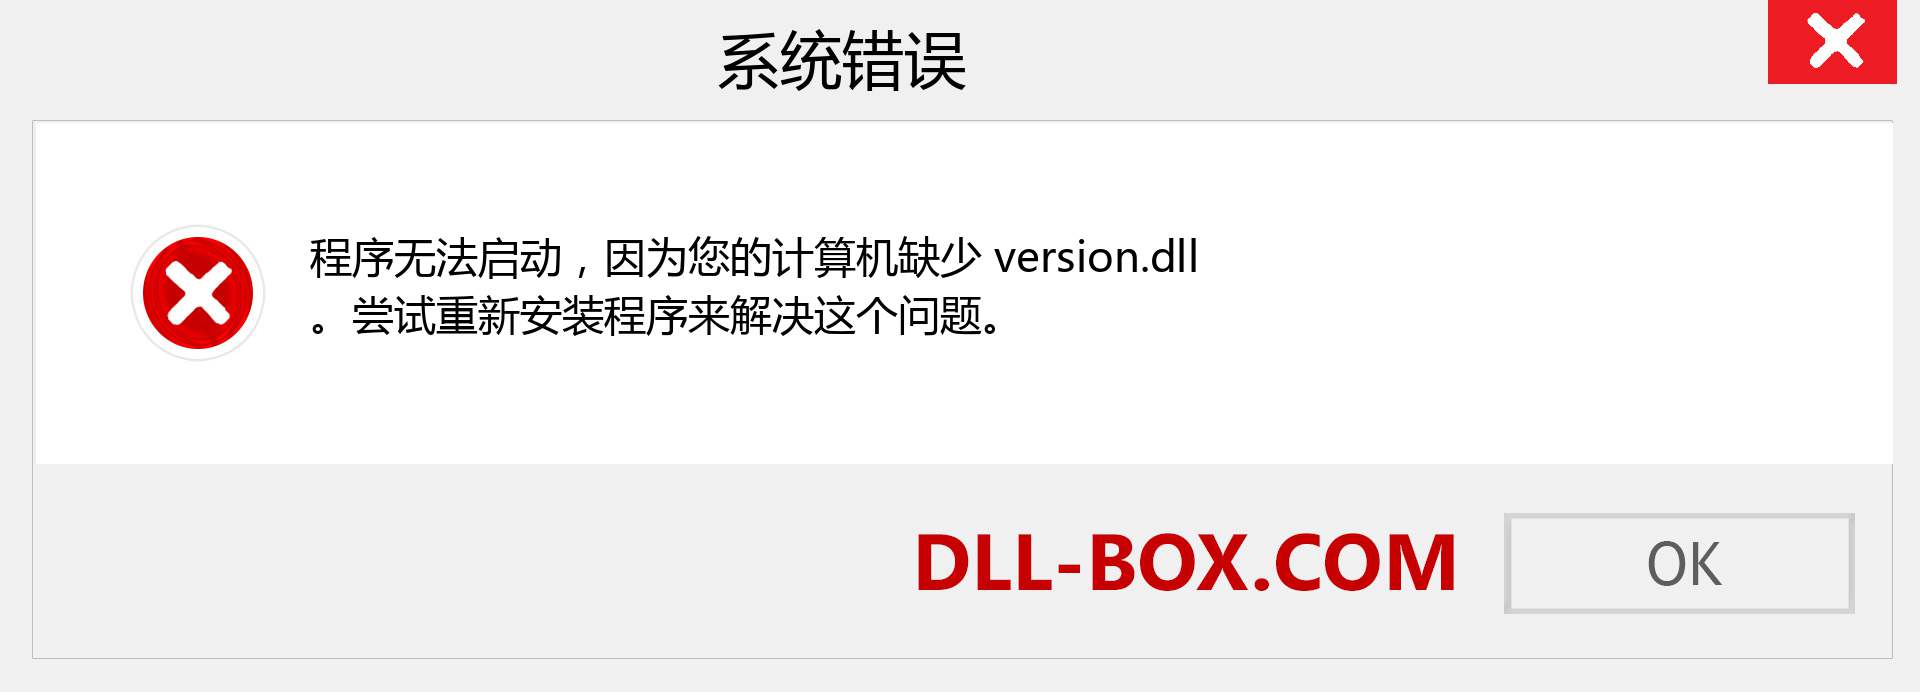 version.dll 文件丢失？。 适用于 Windows 7、8、10 的下载 - 修复 Windows、照片、图像上的 version dll 丢失错误